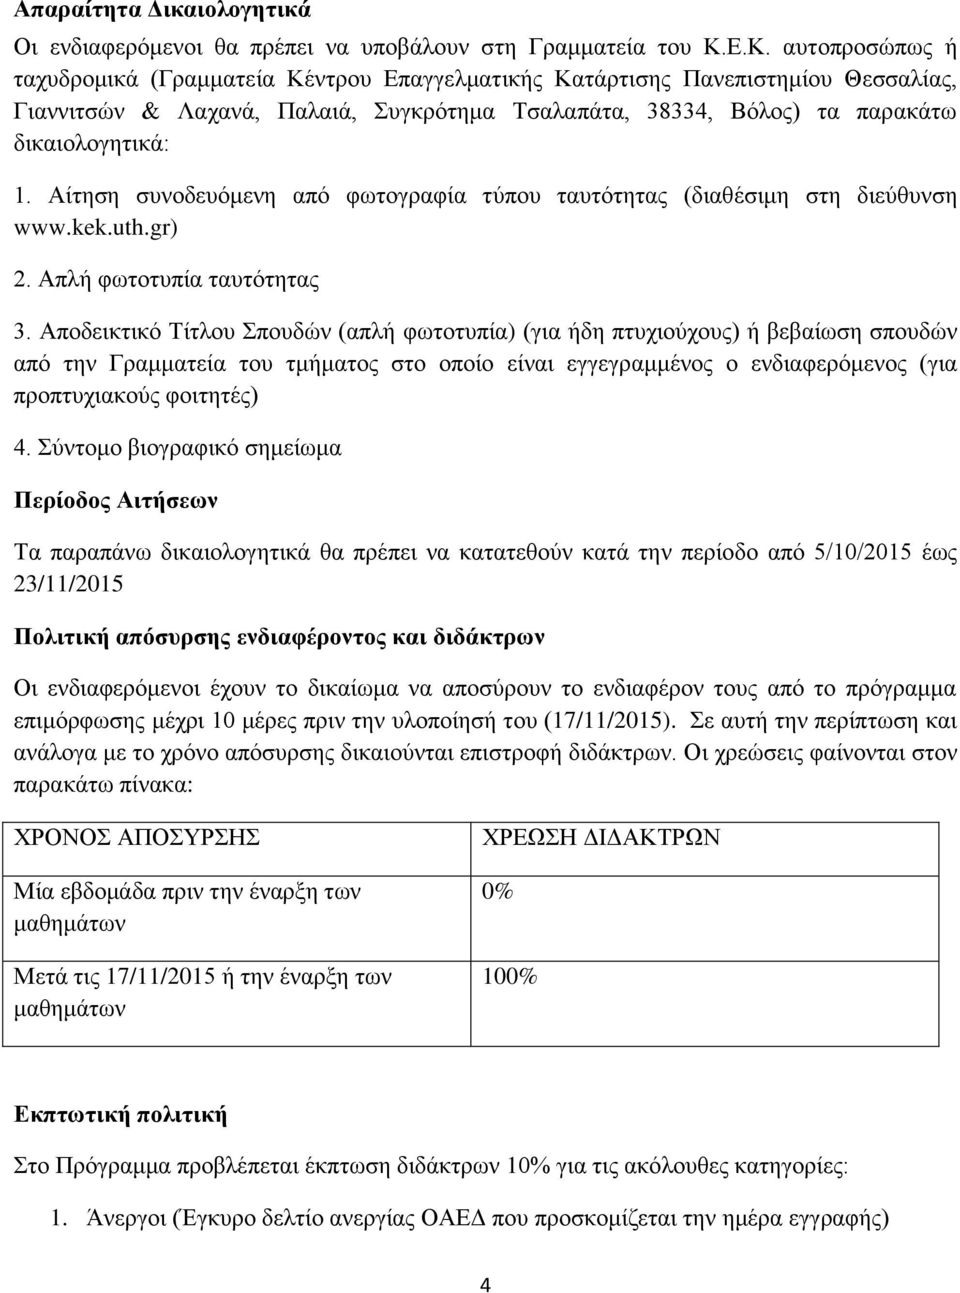 Αίτηση συνοδευόμενη από φωτογραφία τύπου ταυτότητας (διαθέσιμη στη διεύθυνση www.kek.uth.gr) 2. Απλή φωτοτυπία ταυτότητας 3.